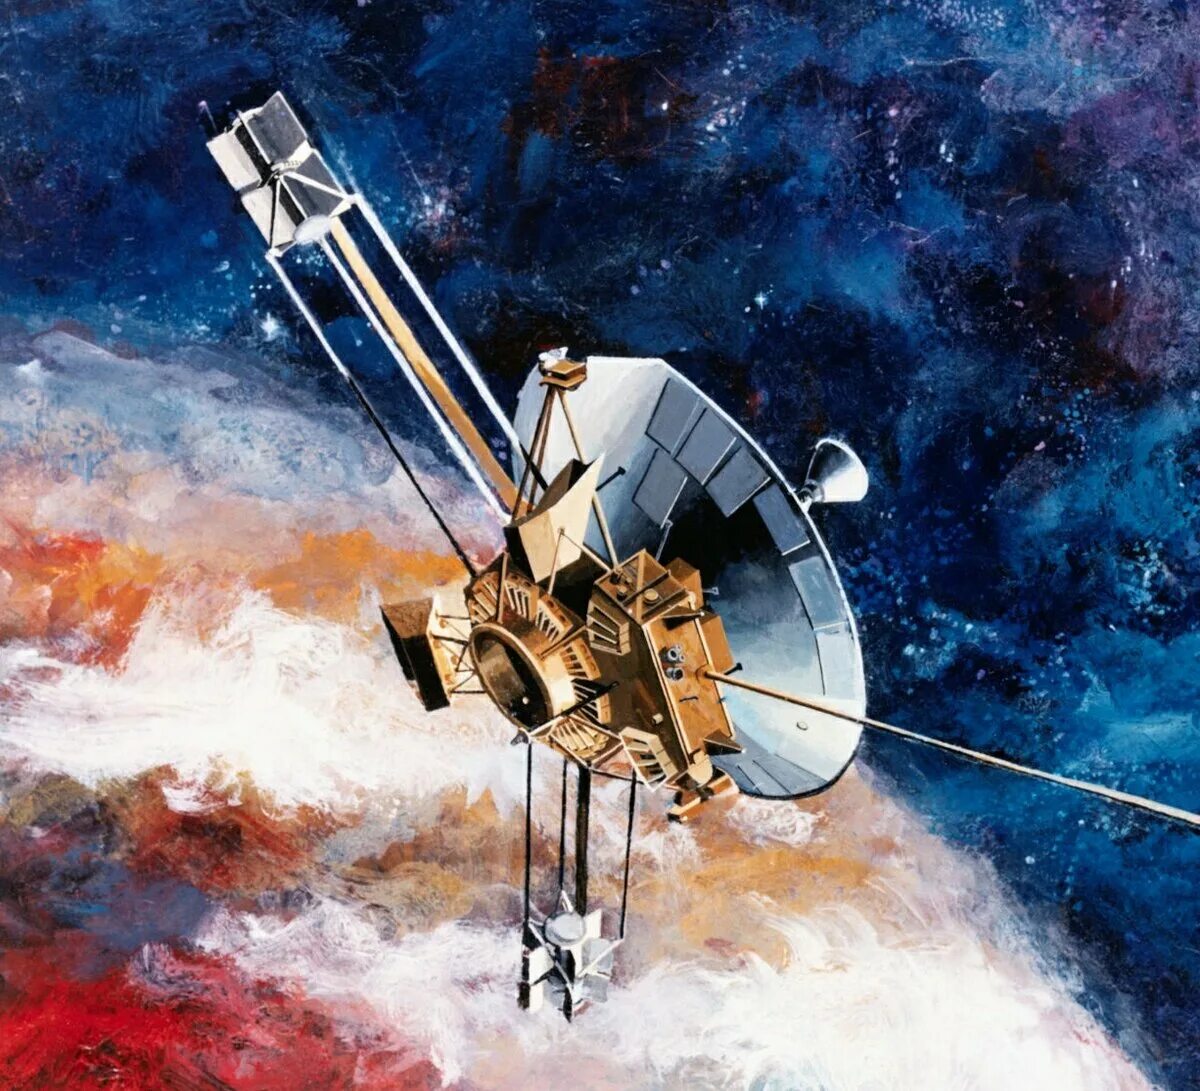 Первые космические зонды. Космический зонд Вояджер 1. Пионер-10 автоматическая межпланетная станция. Космический зонд Вояджер 1 и Вояджер 2. Пионер-11 автоматическая межпланетная станция.